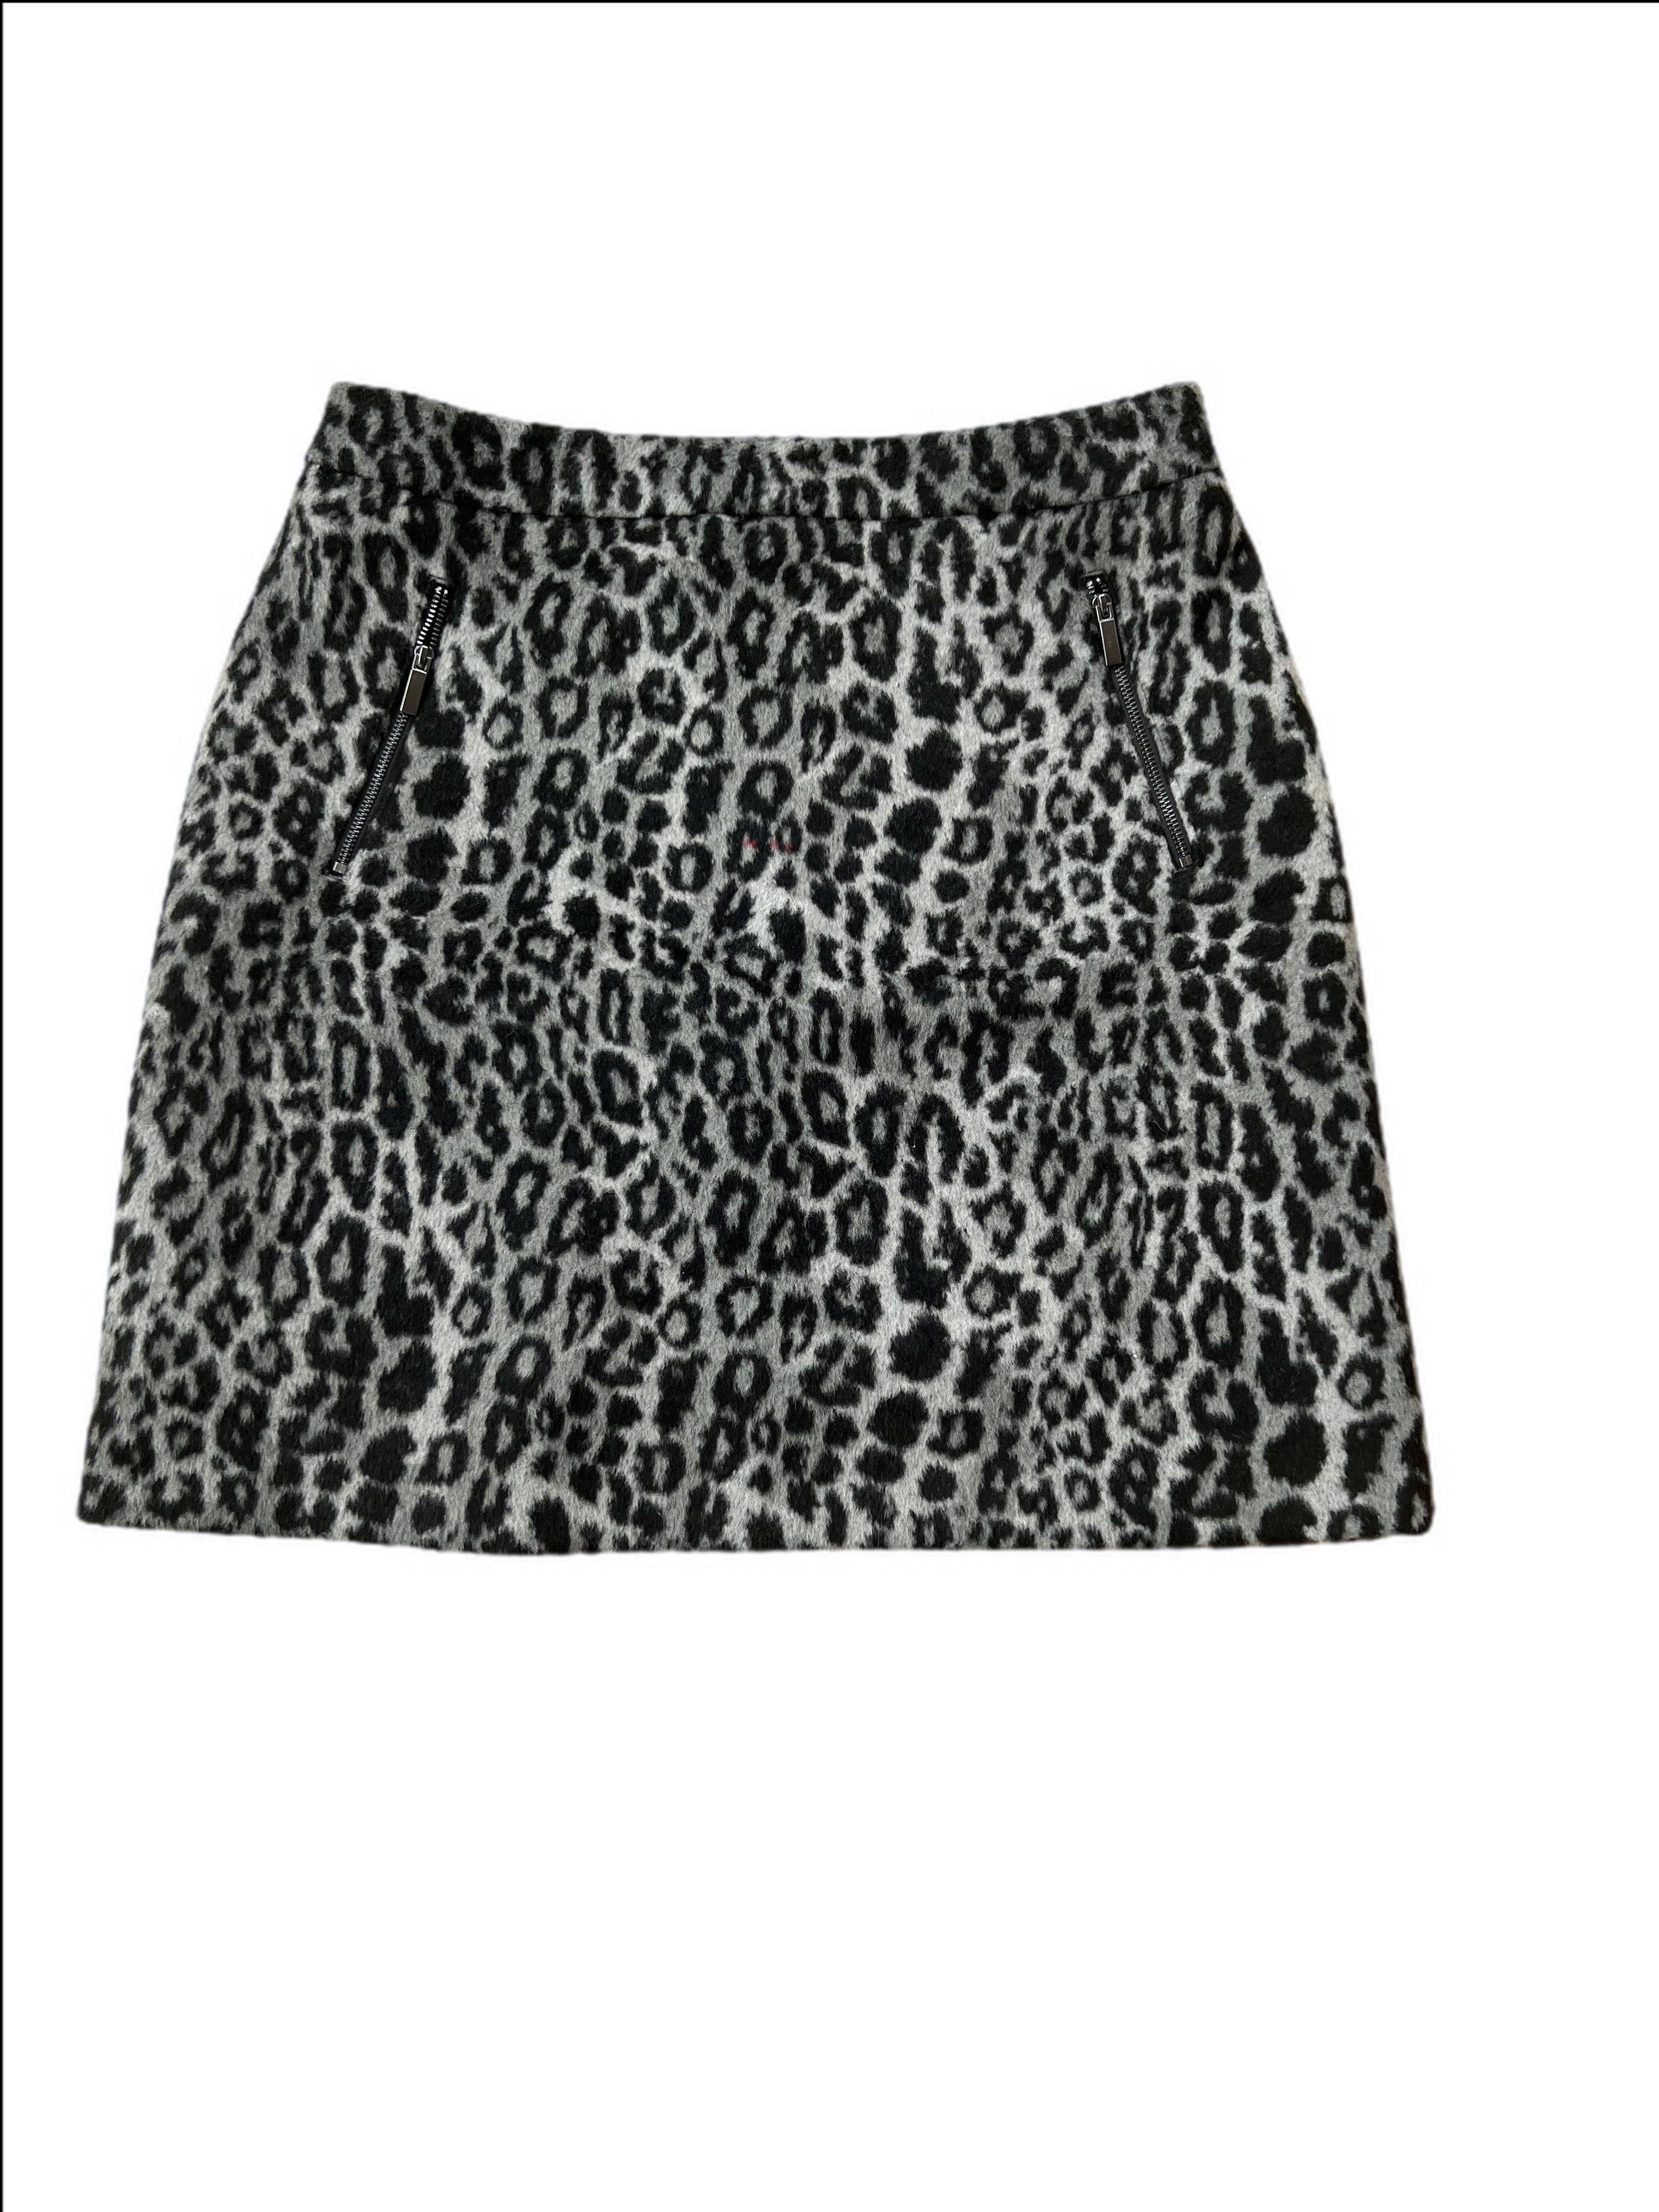 Faux Fur Leopard Print Skirt Small marks